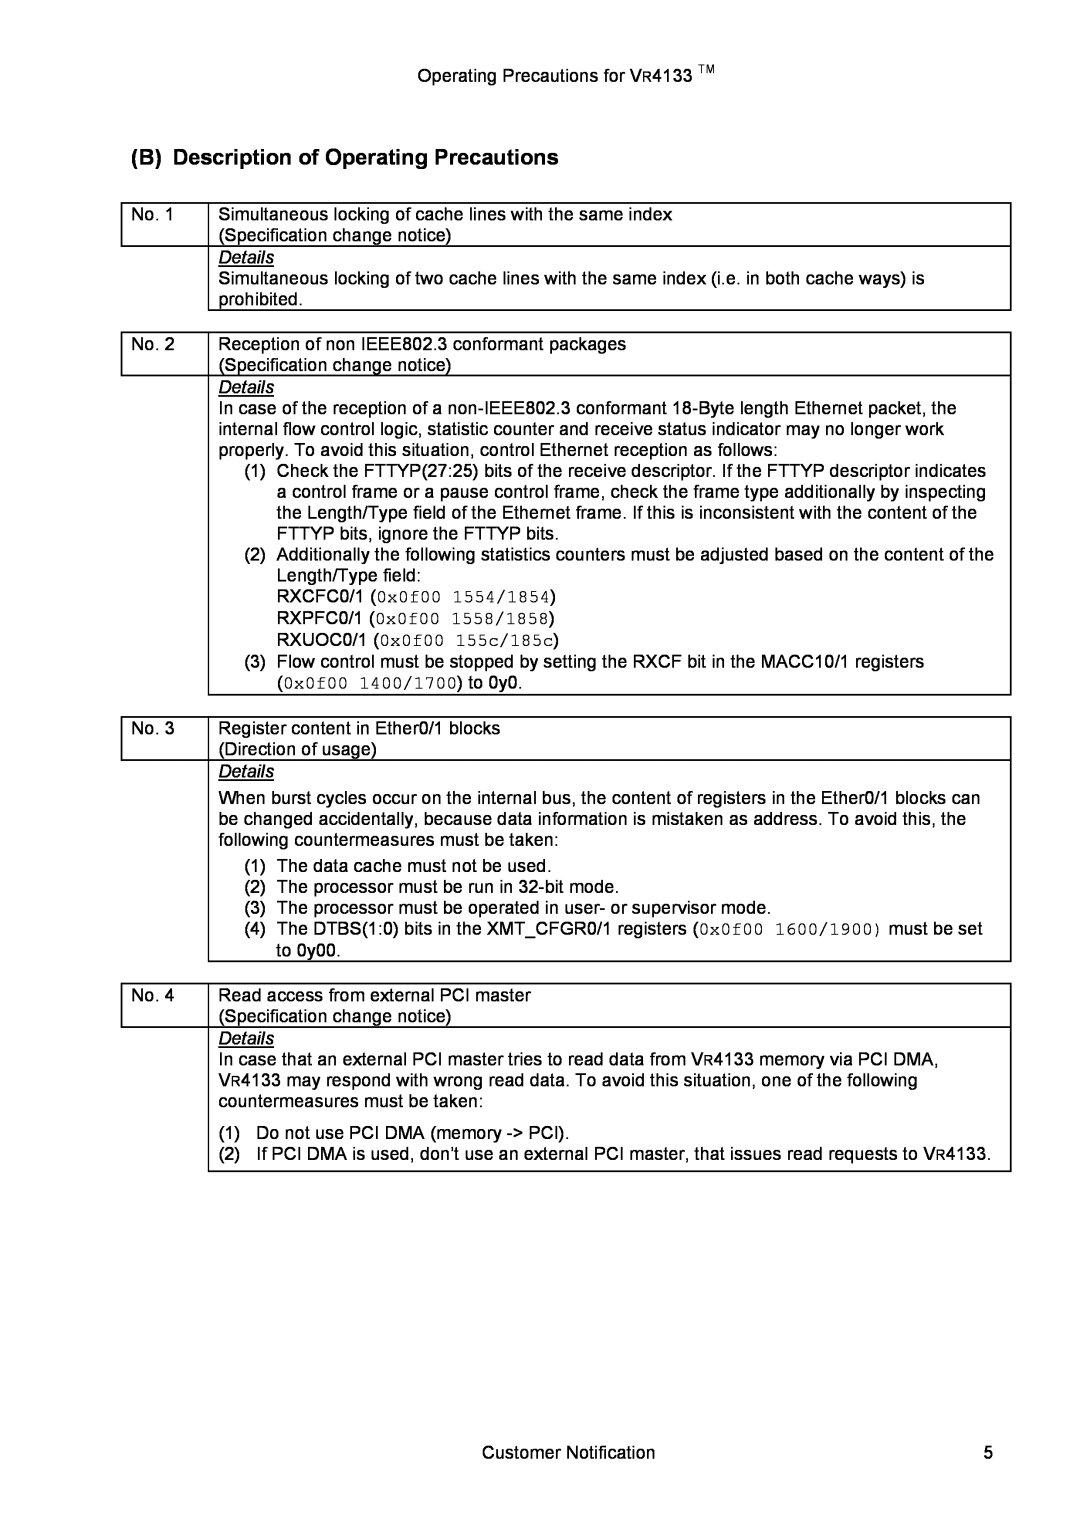 NEC VR4133 manual B Description of Operating Precautions, Details 